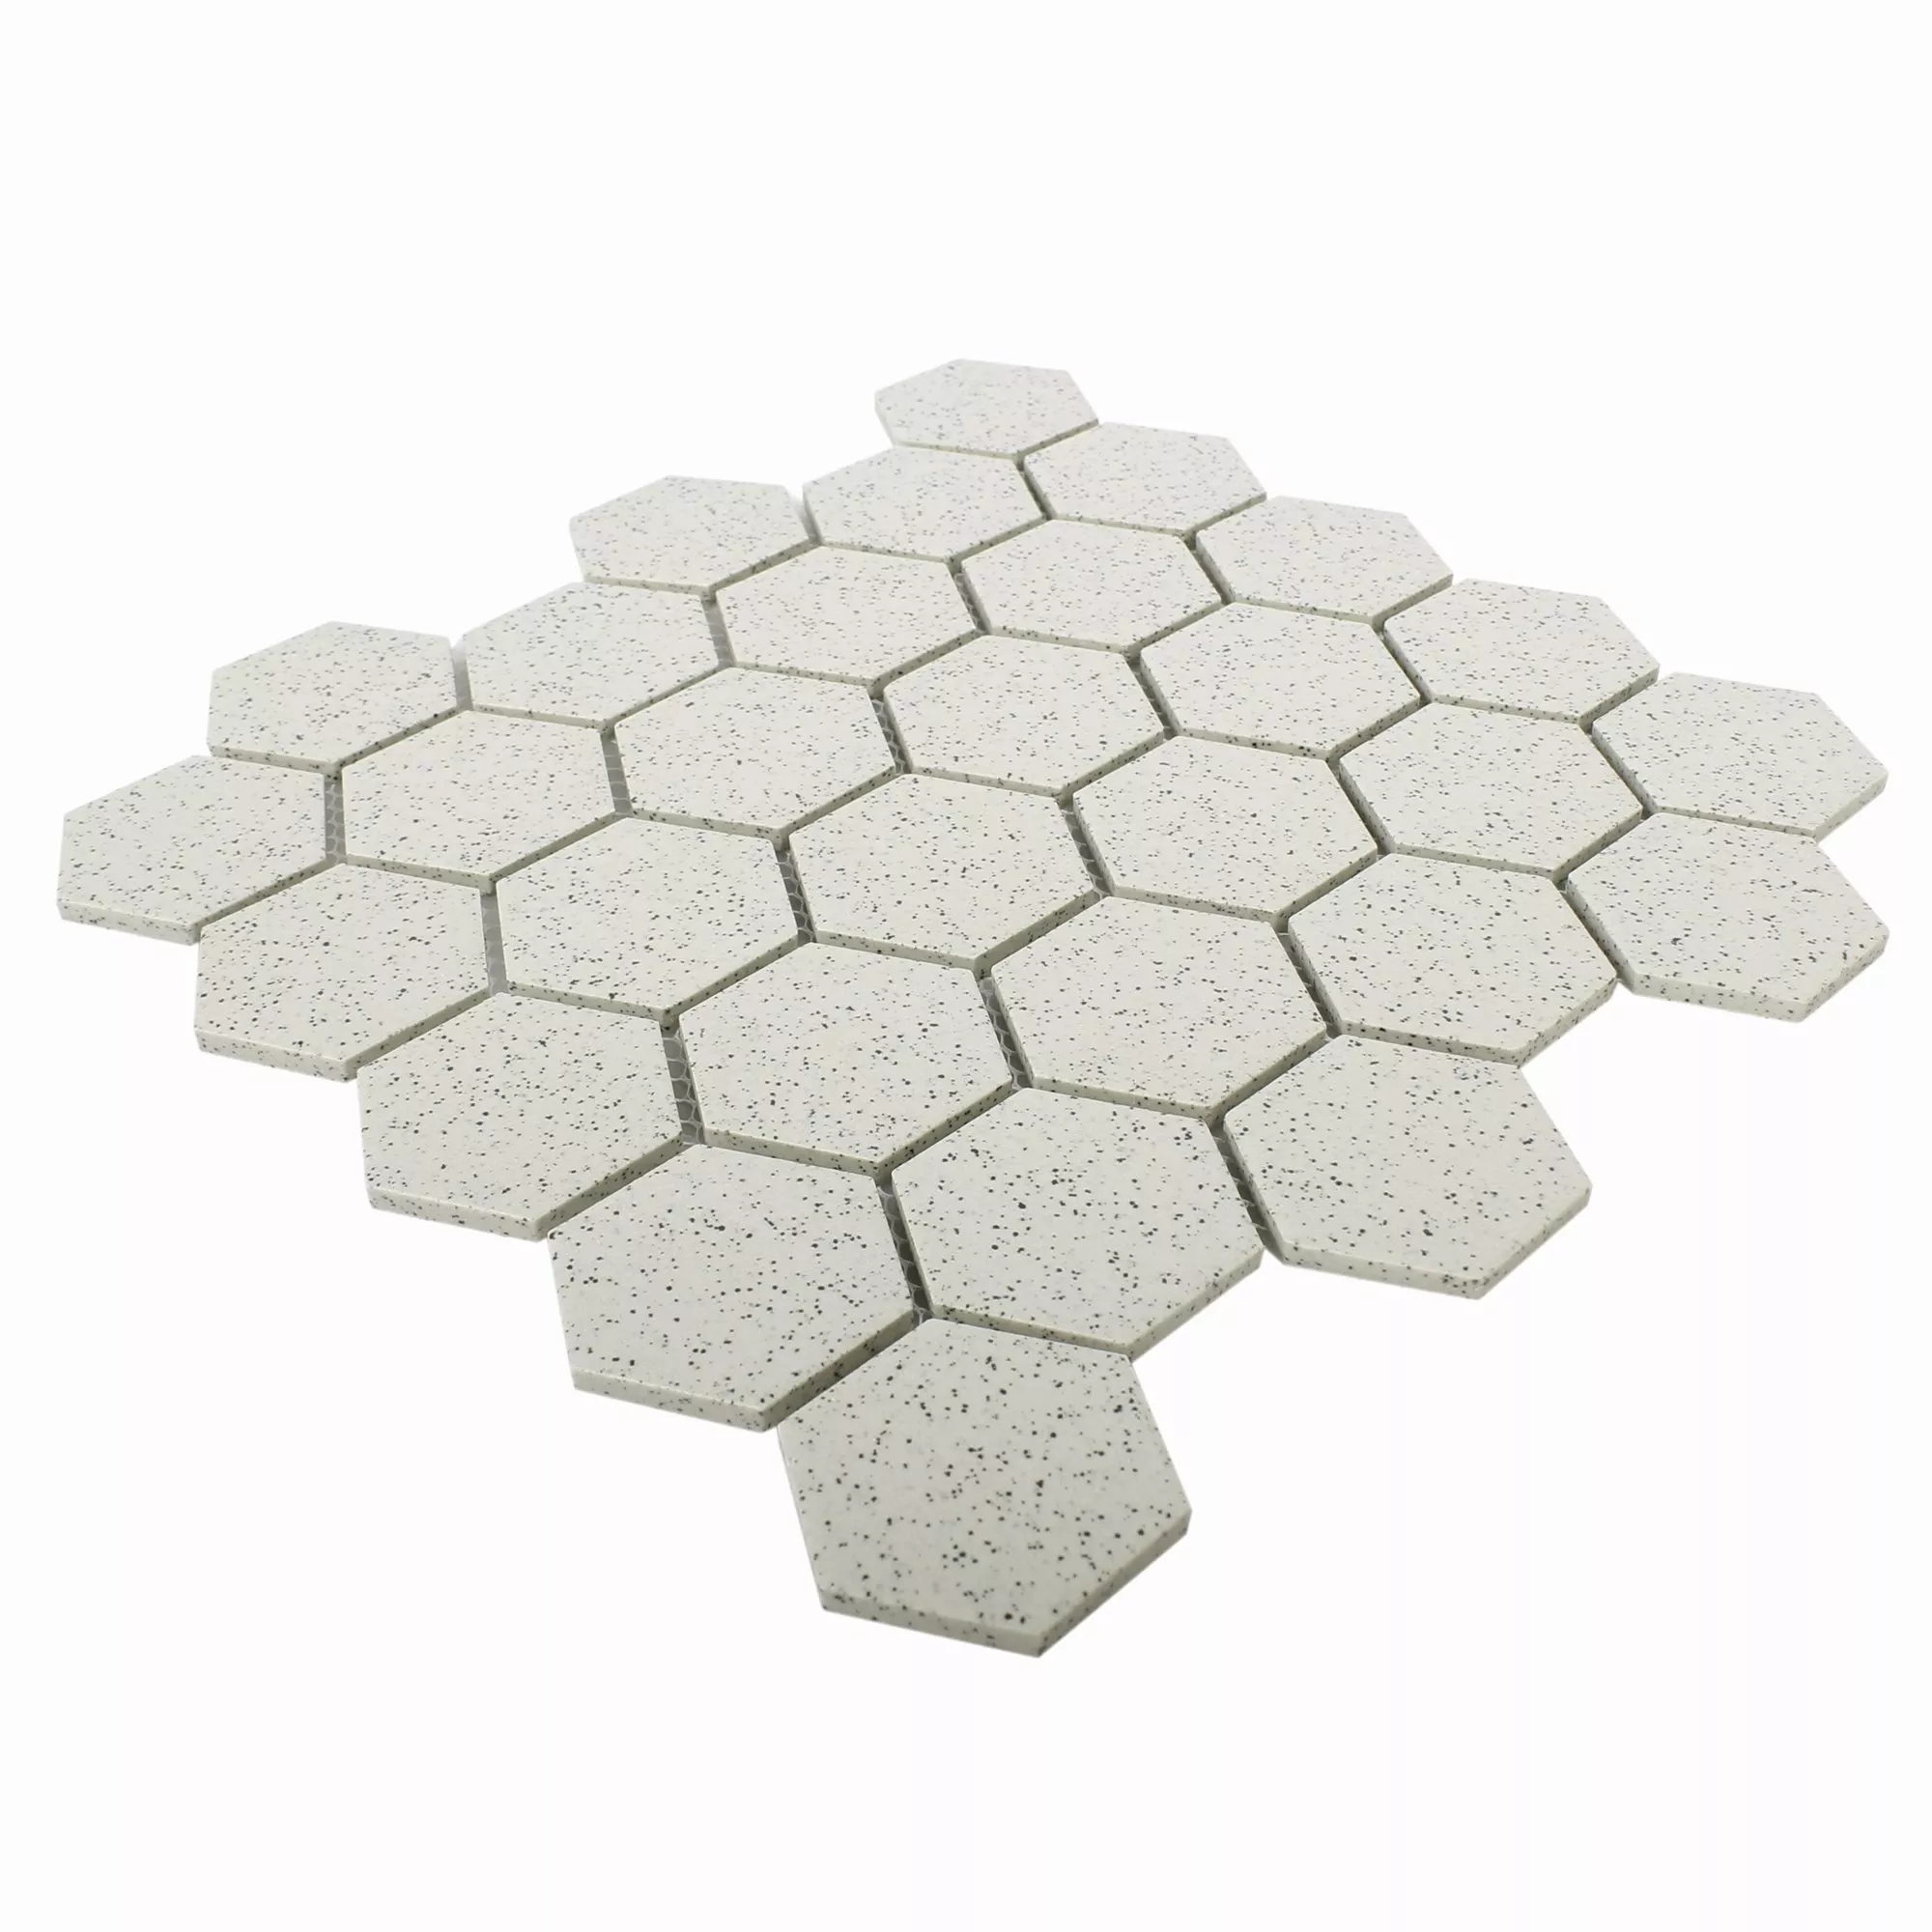 Sample Ceramic Mosaic Tiles Luanda Beige Hexagon 51